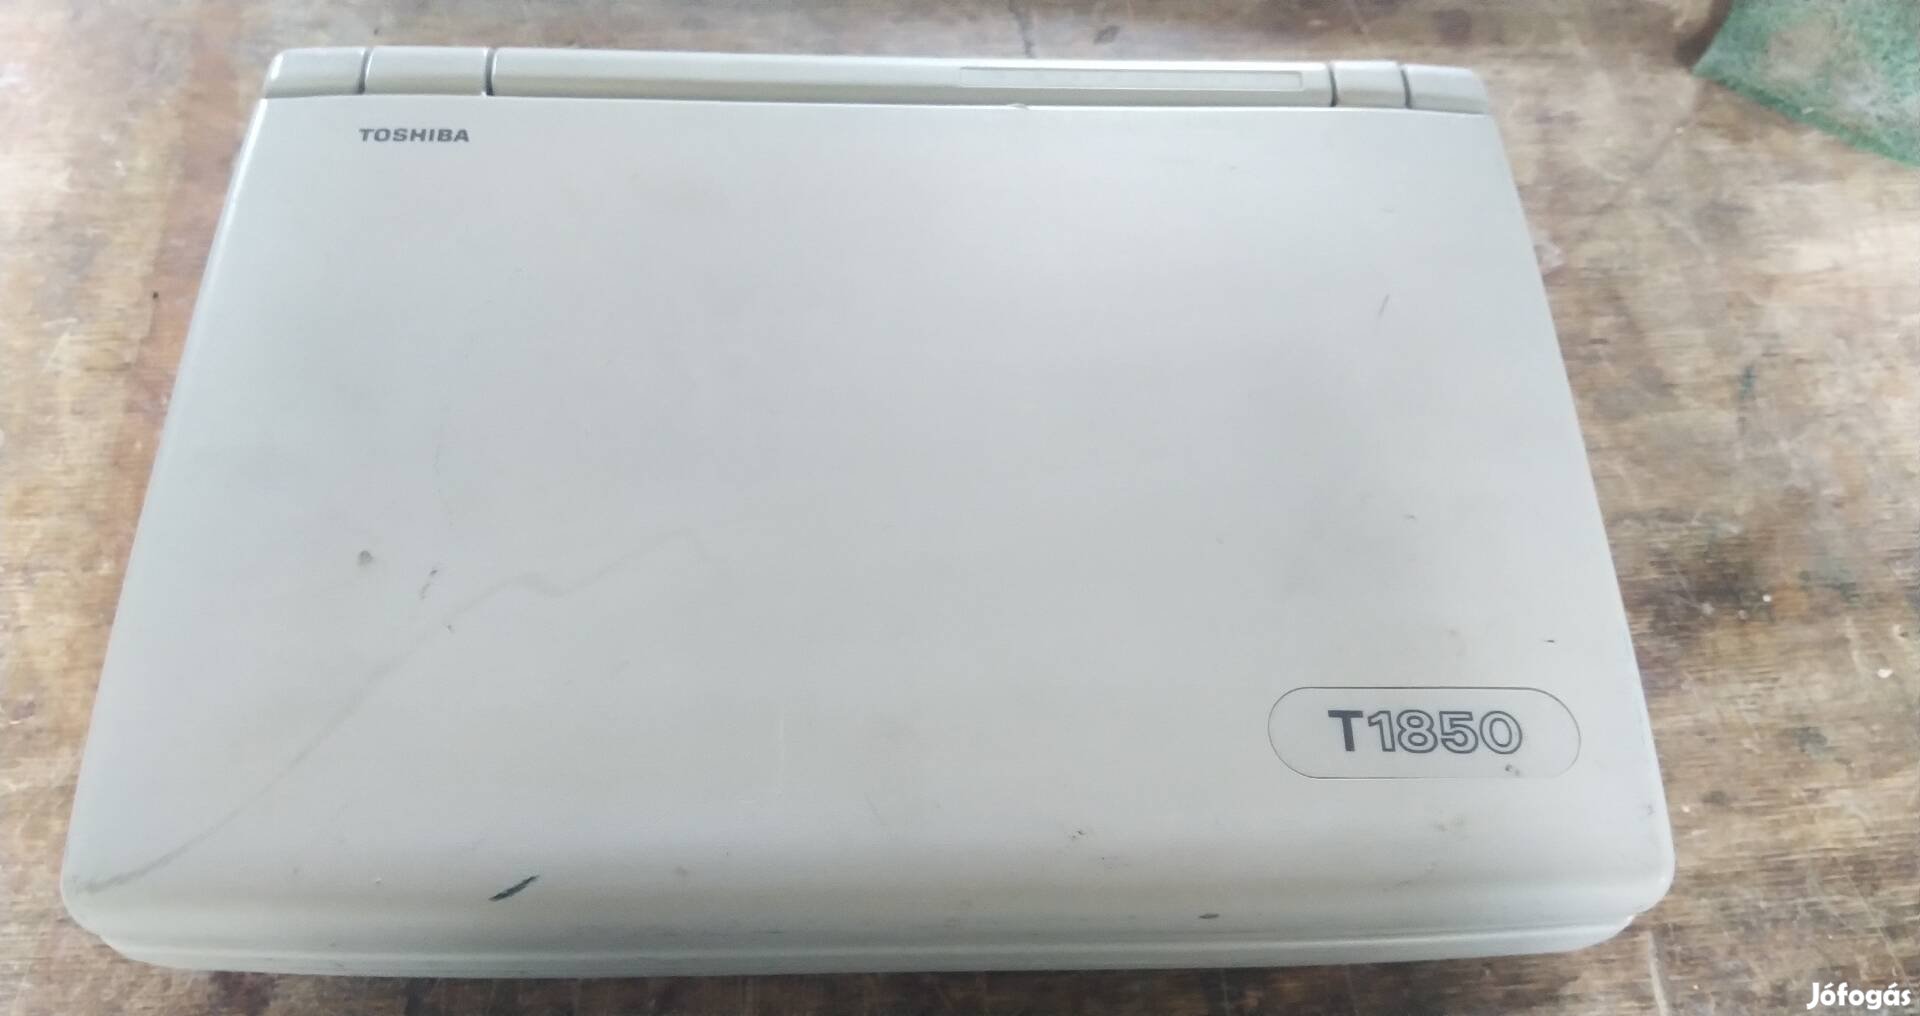 Toshiba T1850 muzeális laptop